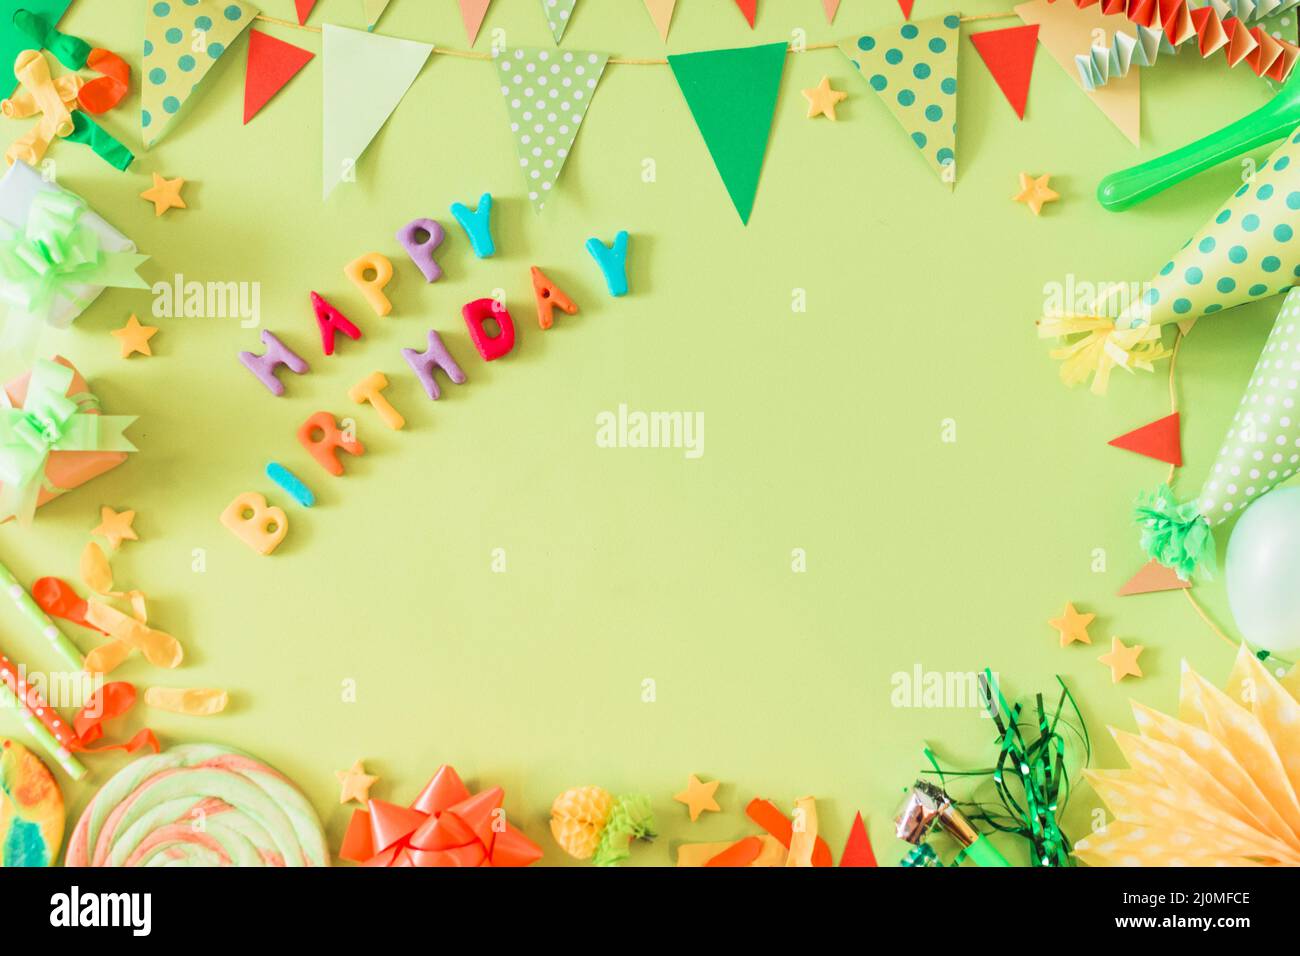 Bạn muốn tạo một bầu không khí rực rỡ cho ngày sinh nhật của mình? Hãy thử sử dụng nền xanh sinh nhật như một phông nền cho bữa tiệc của bạn. Hãy xem hình ảnh liên quan để lấy thêm ý tưởng và cảm nhận được sự sinh động của nó.